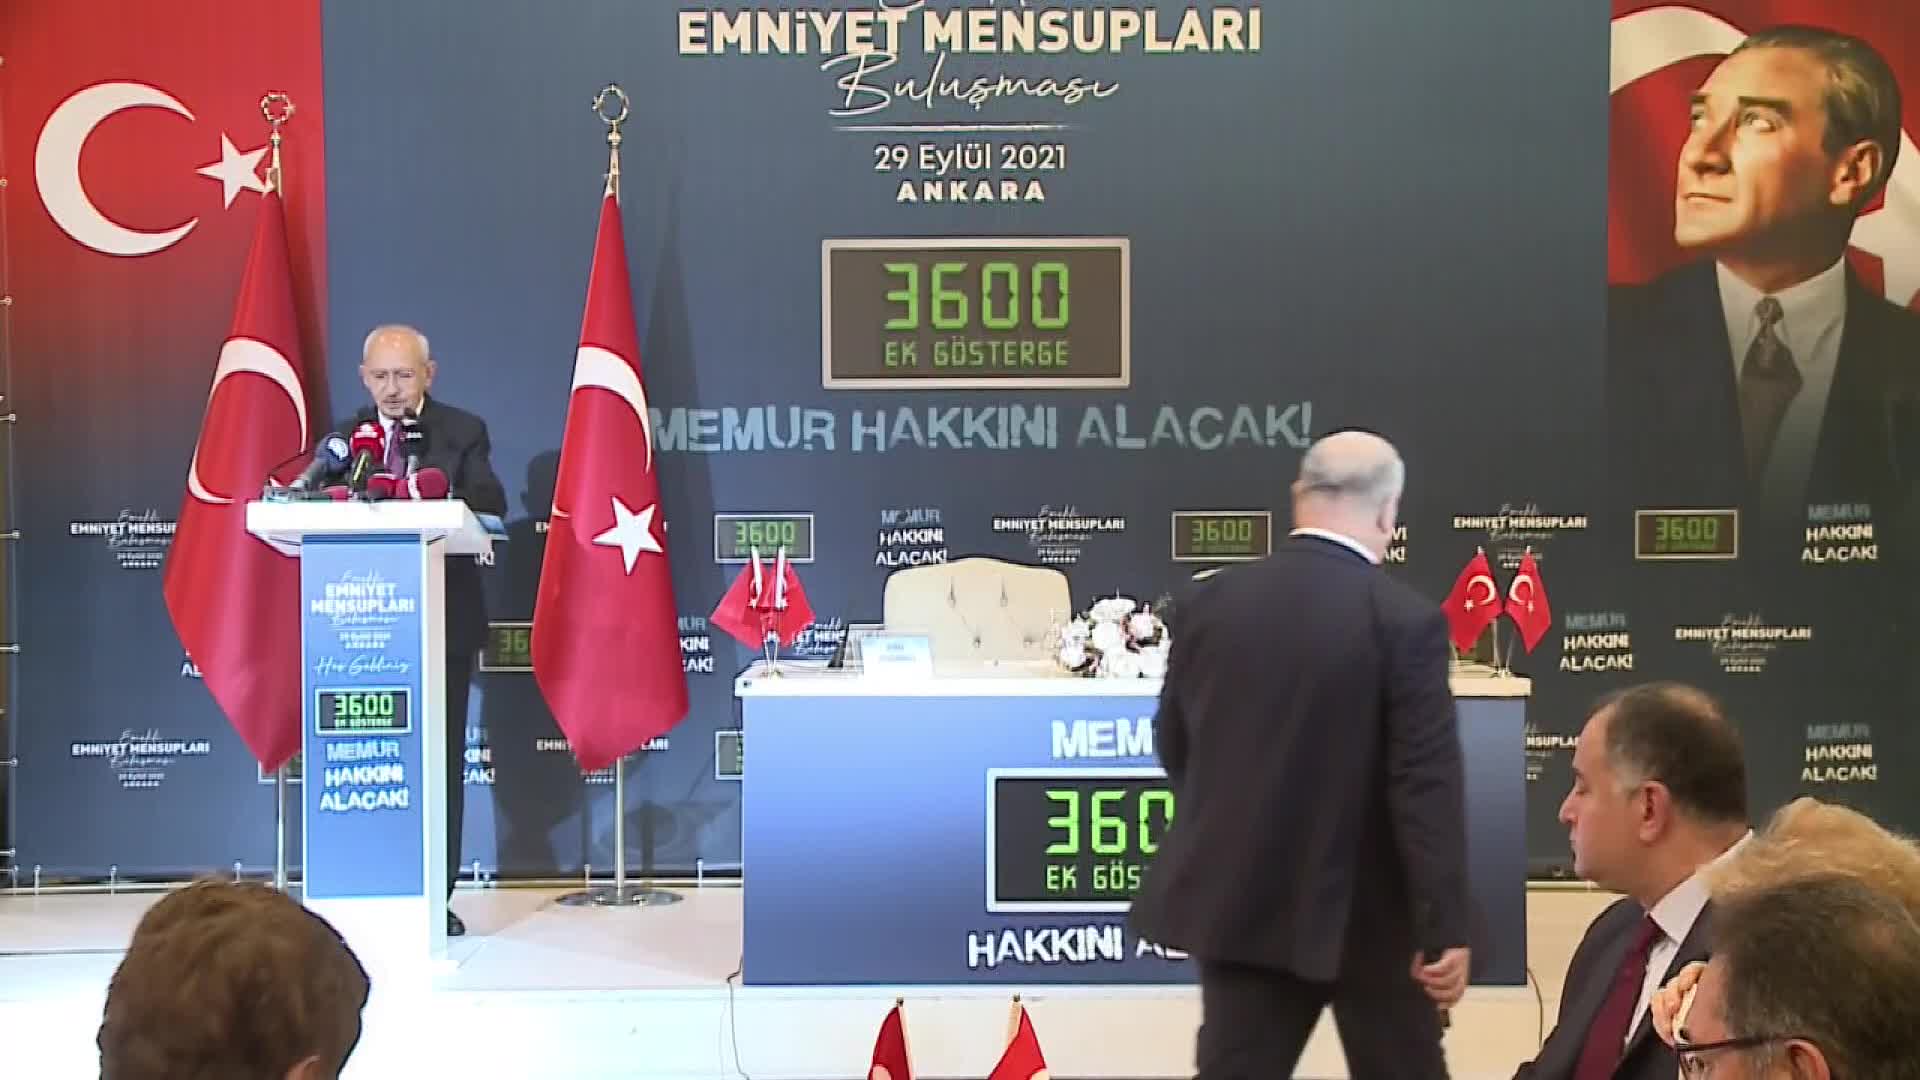 Kılıçdaroğlu: "Siyaset müdahale etmese bir gram kokain bu ülkeye giremez"